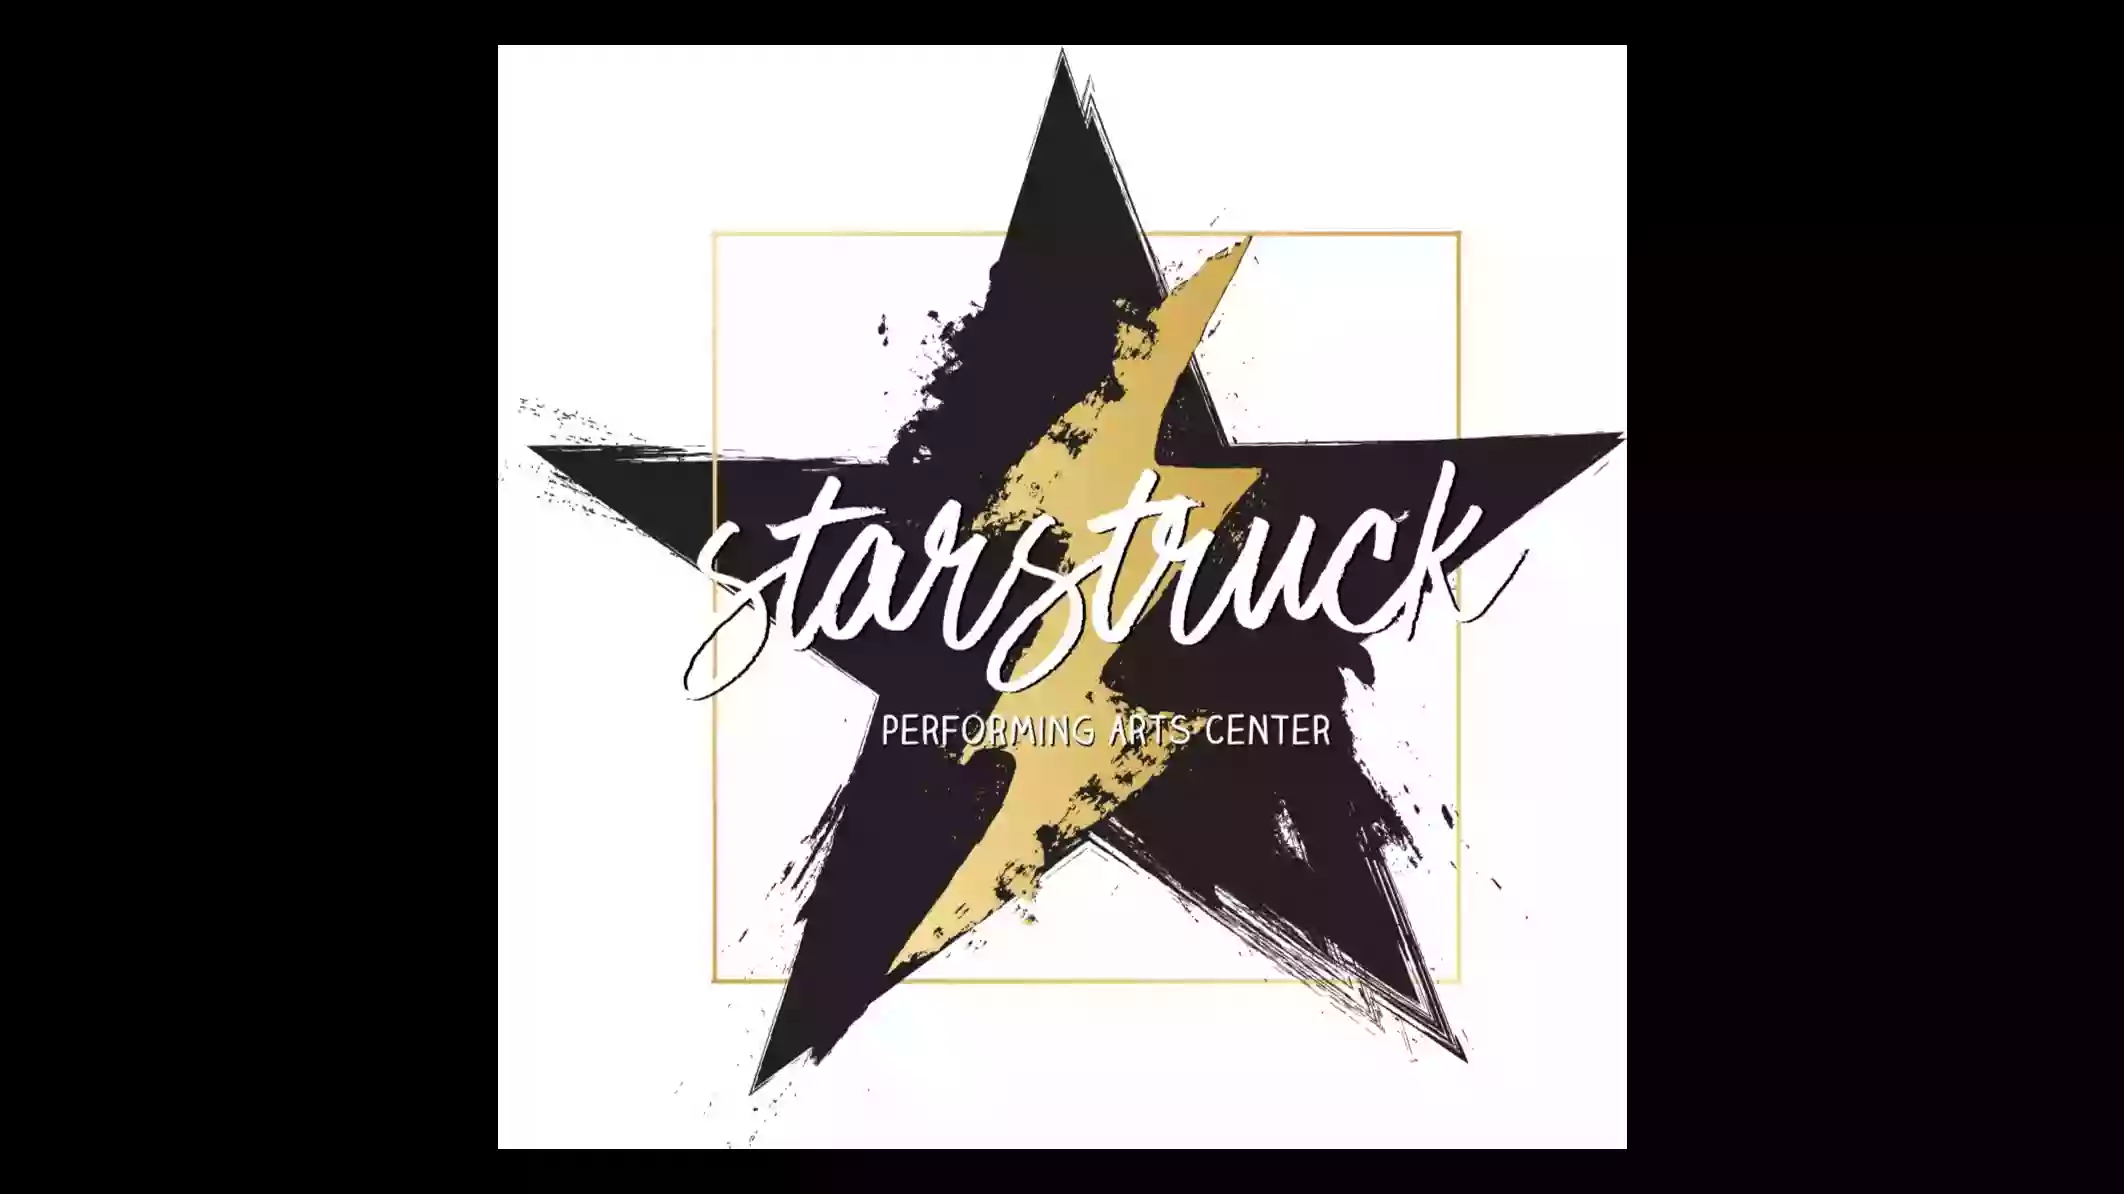 Starstruck Performing Arts Center